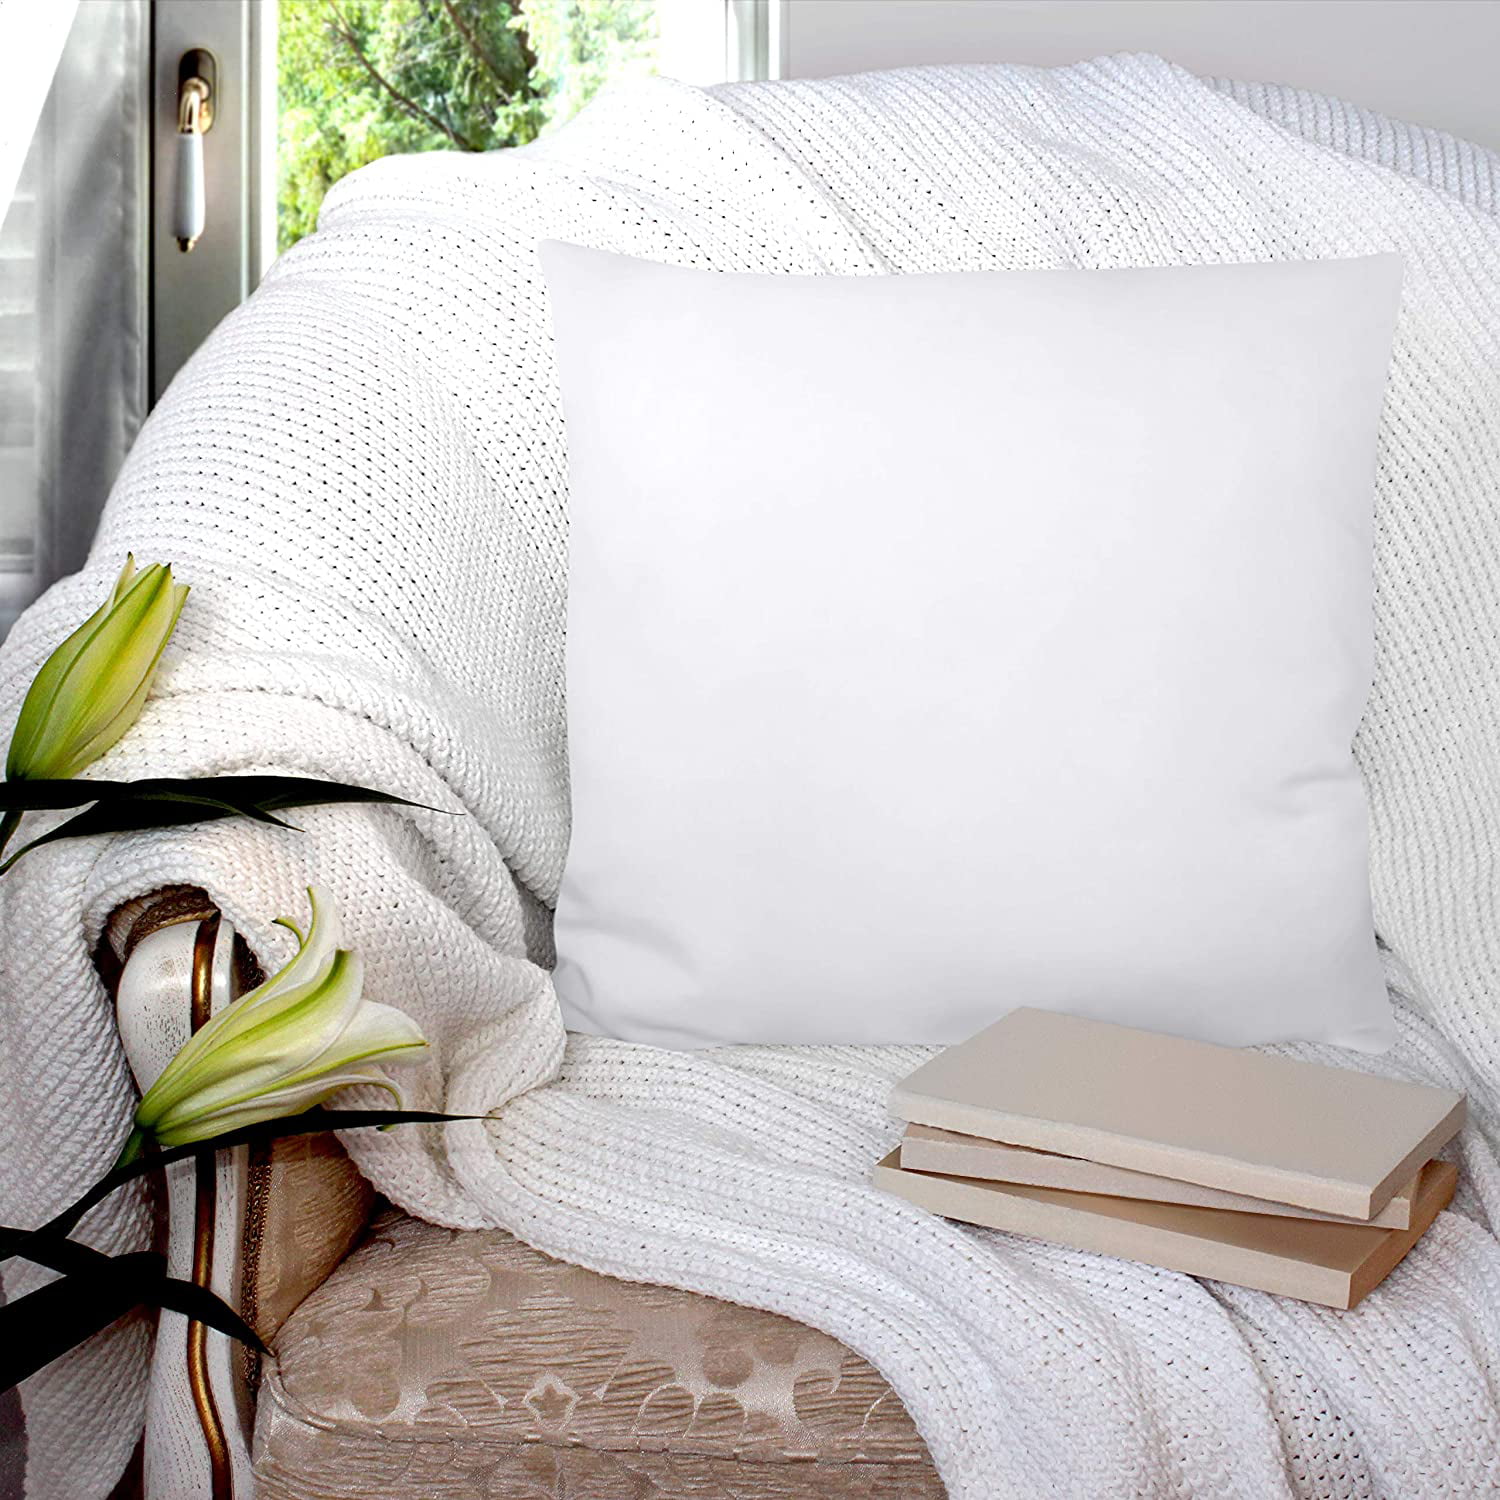 6759円 【WEB限定】 Lipo Throw Pillow Inserts Pack of 2 White Decorative Pillows with 100% Cotton Cover Square for Cushion Bed Couch Sofa Car 22x22 Inch